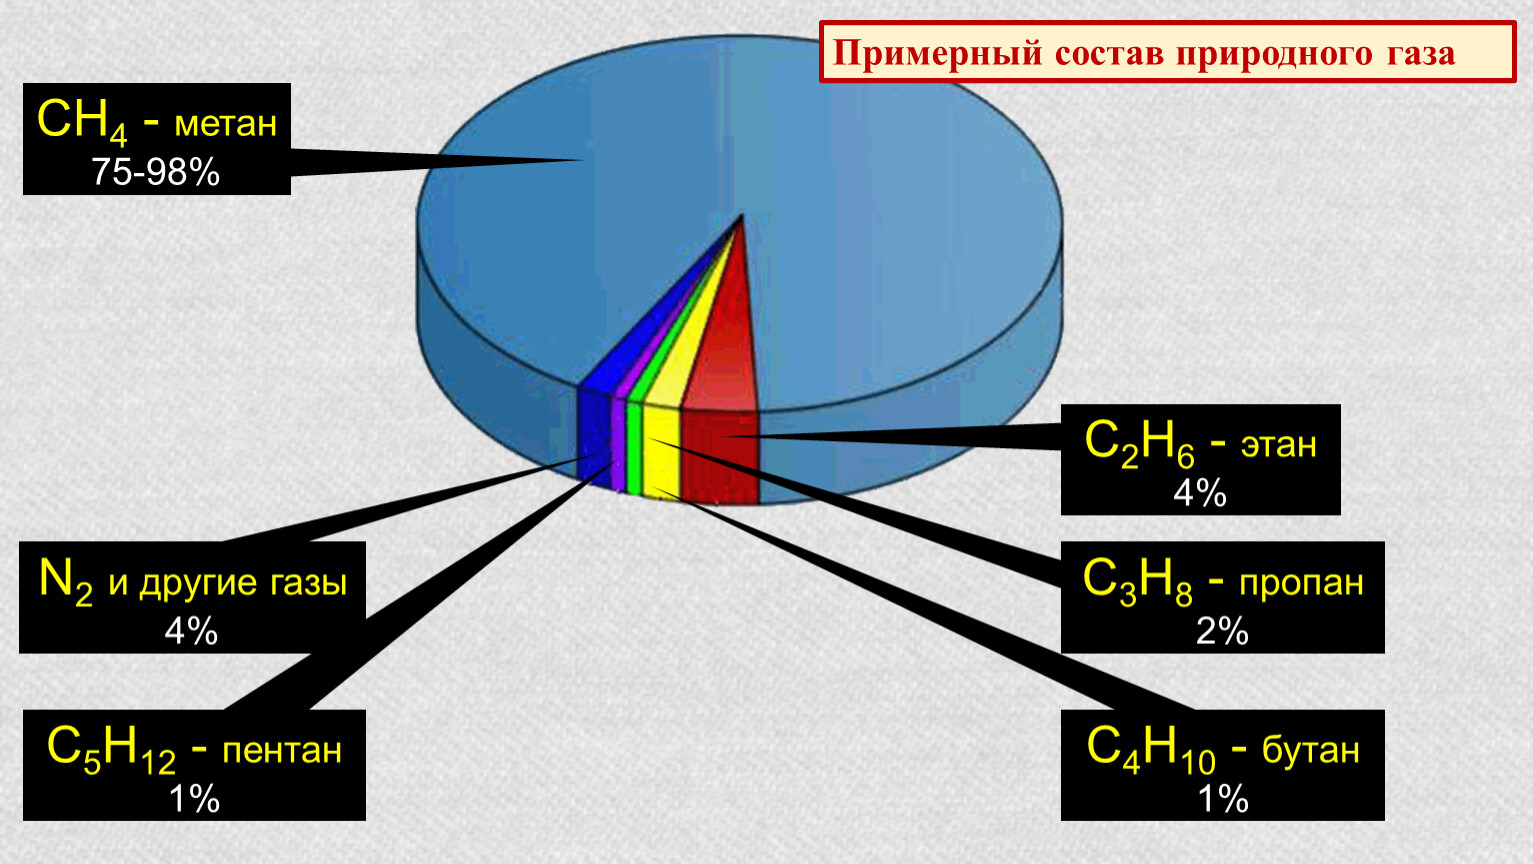 Метан и сероводород. Природный ГАЗ хим состав. Химический состав природного газа диаграмма. Примерный химический состав природного газа. Состав метана газа природный ГАЗ.